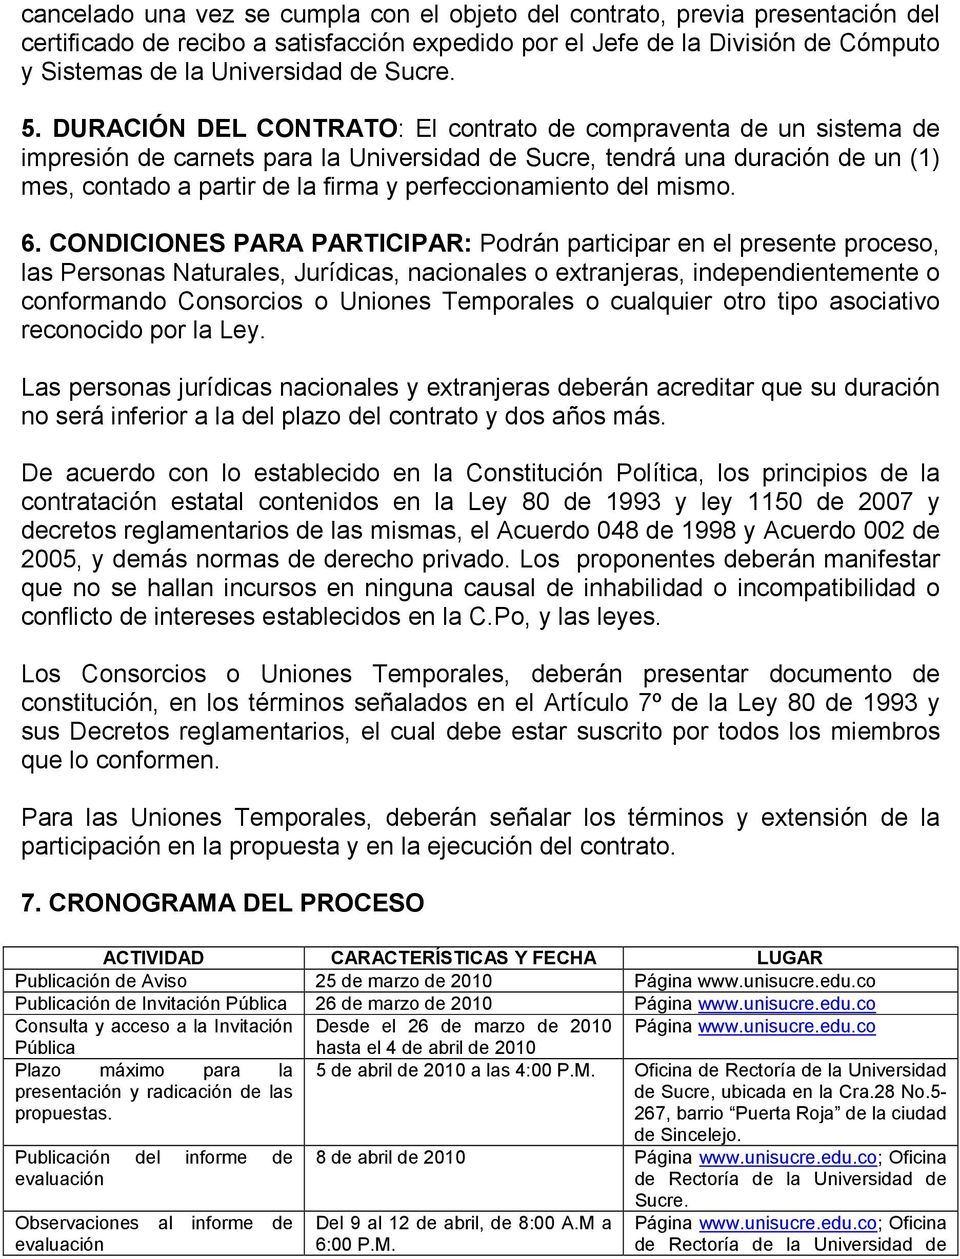 DURACIÓN DEL CONTRATO: El contrato de compraventa de un sistema de impresión de carnets para la Universidad de Sucre, tendrá una duración de un (1) mes, contado a partir de la firma y